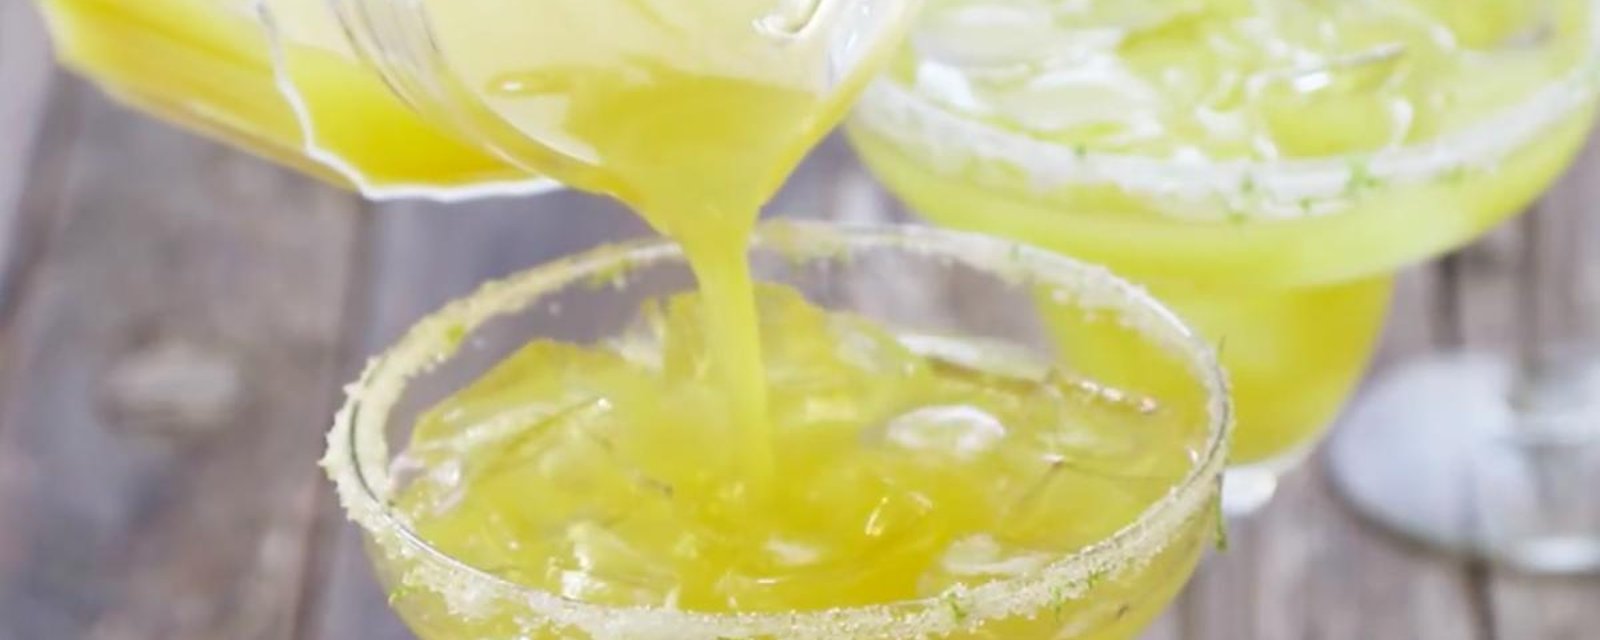 Le drink parfait pour une chaude journée estivale: la Margarita à l'ananas